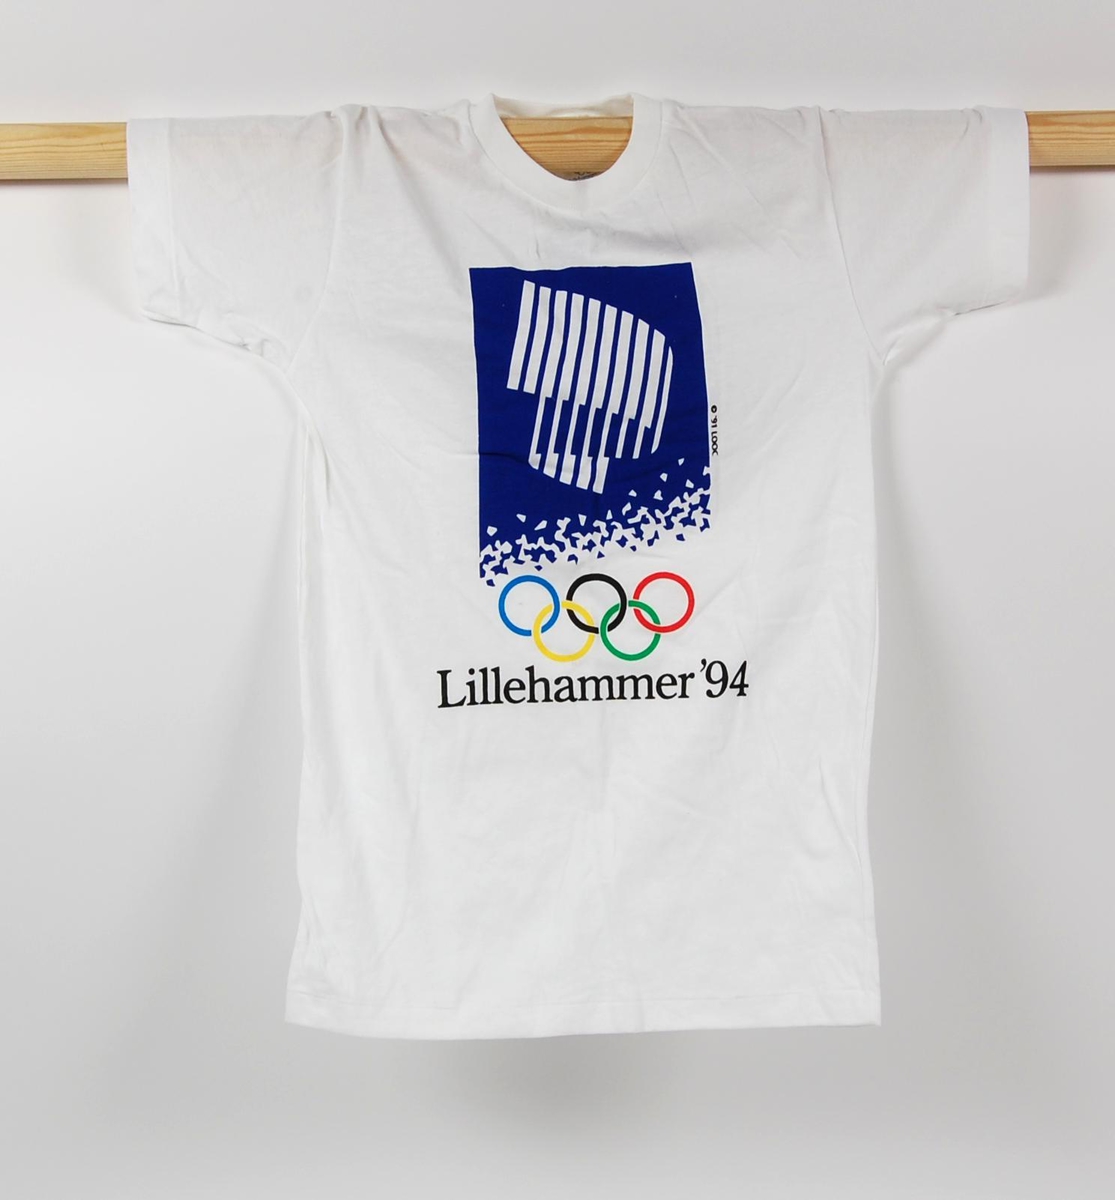 Hvit t-skjorte med flerfarget logo for de olympiske vinterleker på Lillehammer i 1994. T-skjorten er i barnestørrelse.